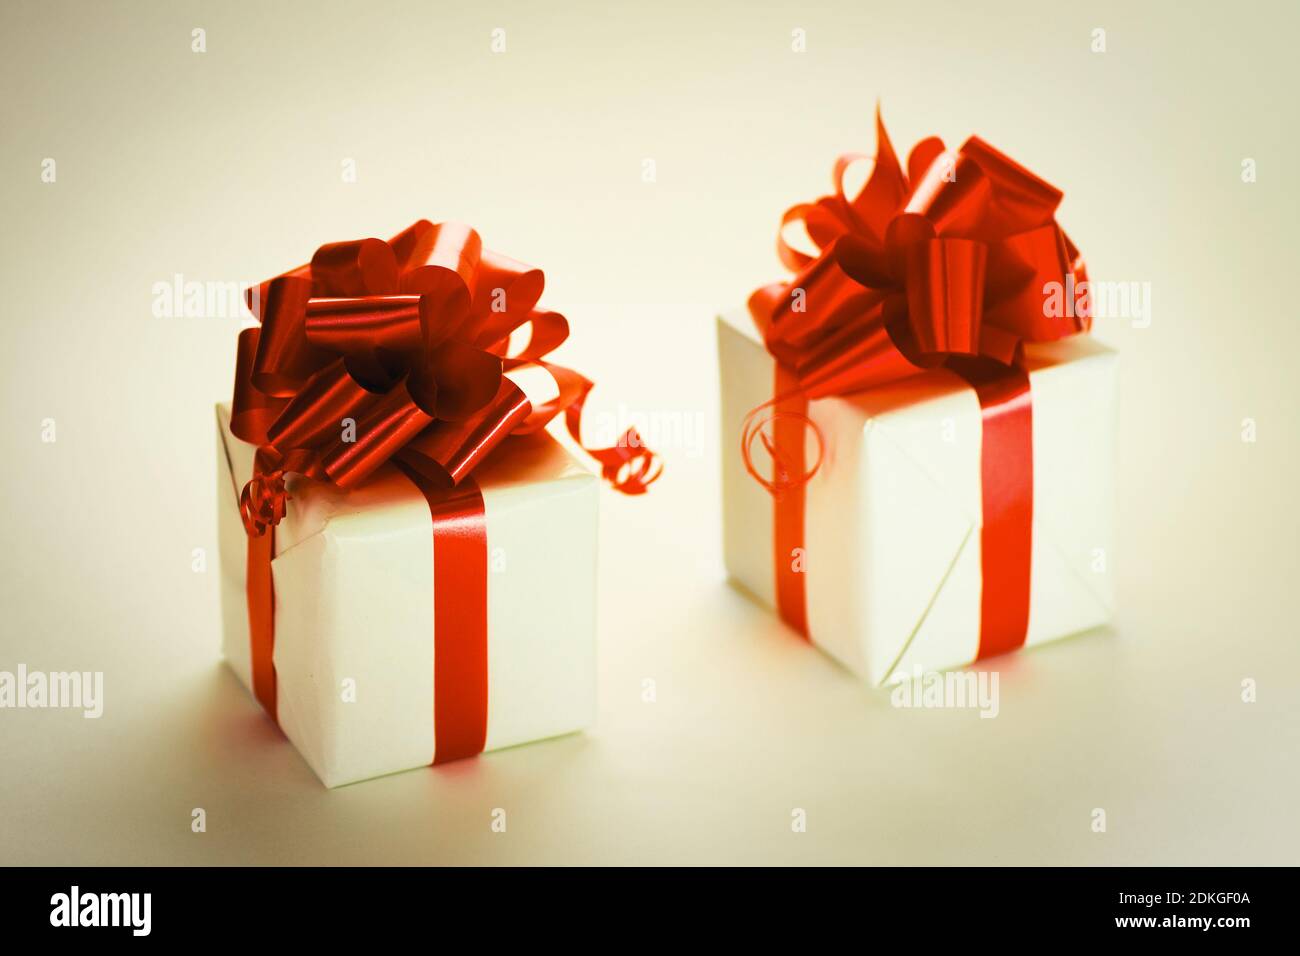 Geschenkboxen und Weihnachtsspielzeug auf hellem Hintergrund Stockfoto